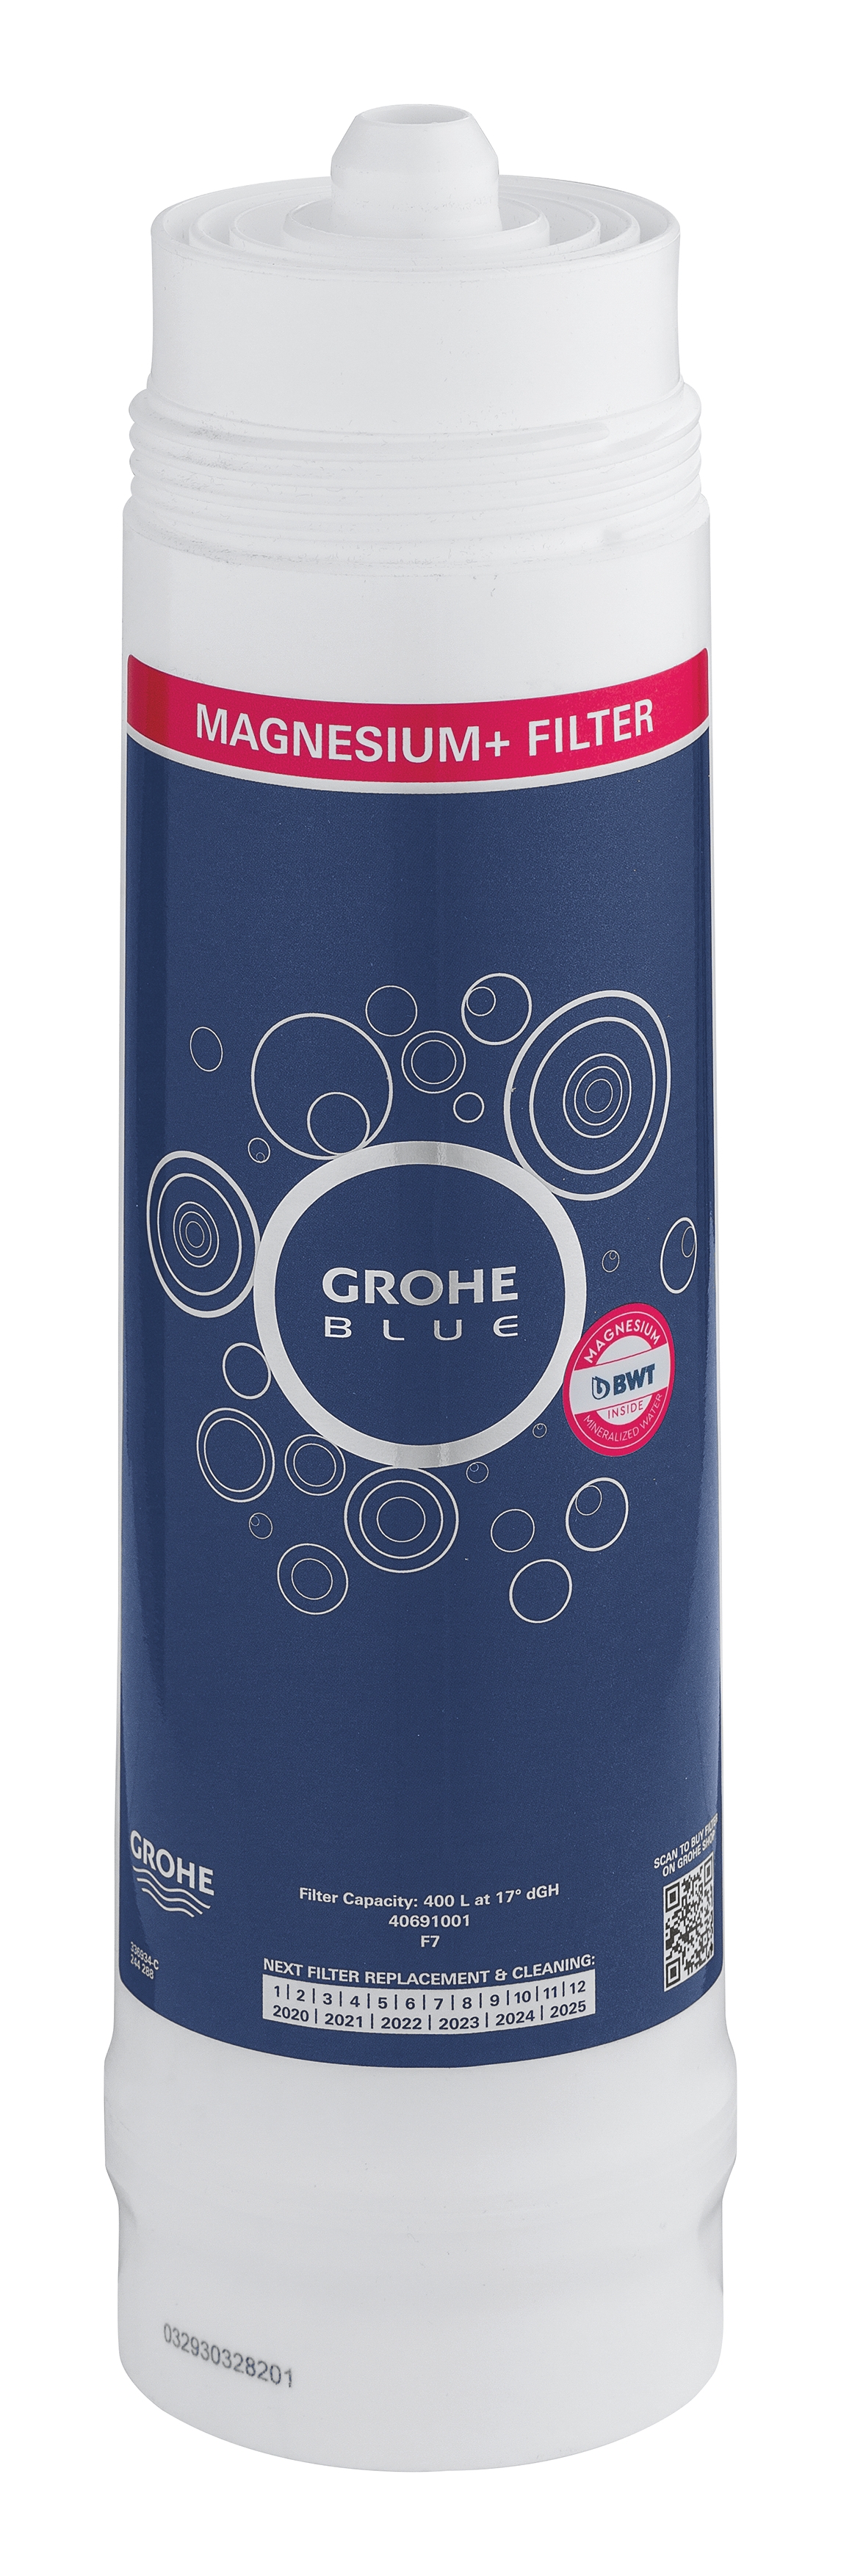 

Фильтр сменный для водных систем GROHE Blue содержащий магний (400 литров) new (40691001), 40691001